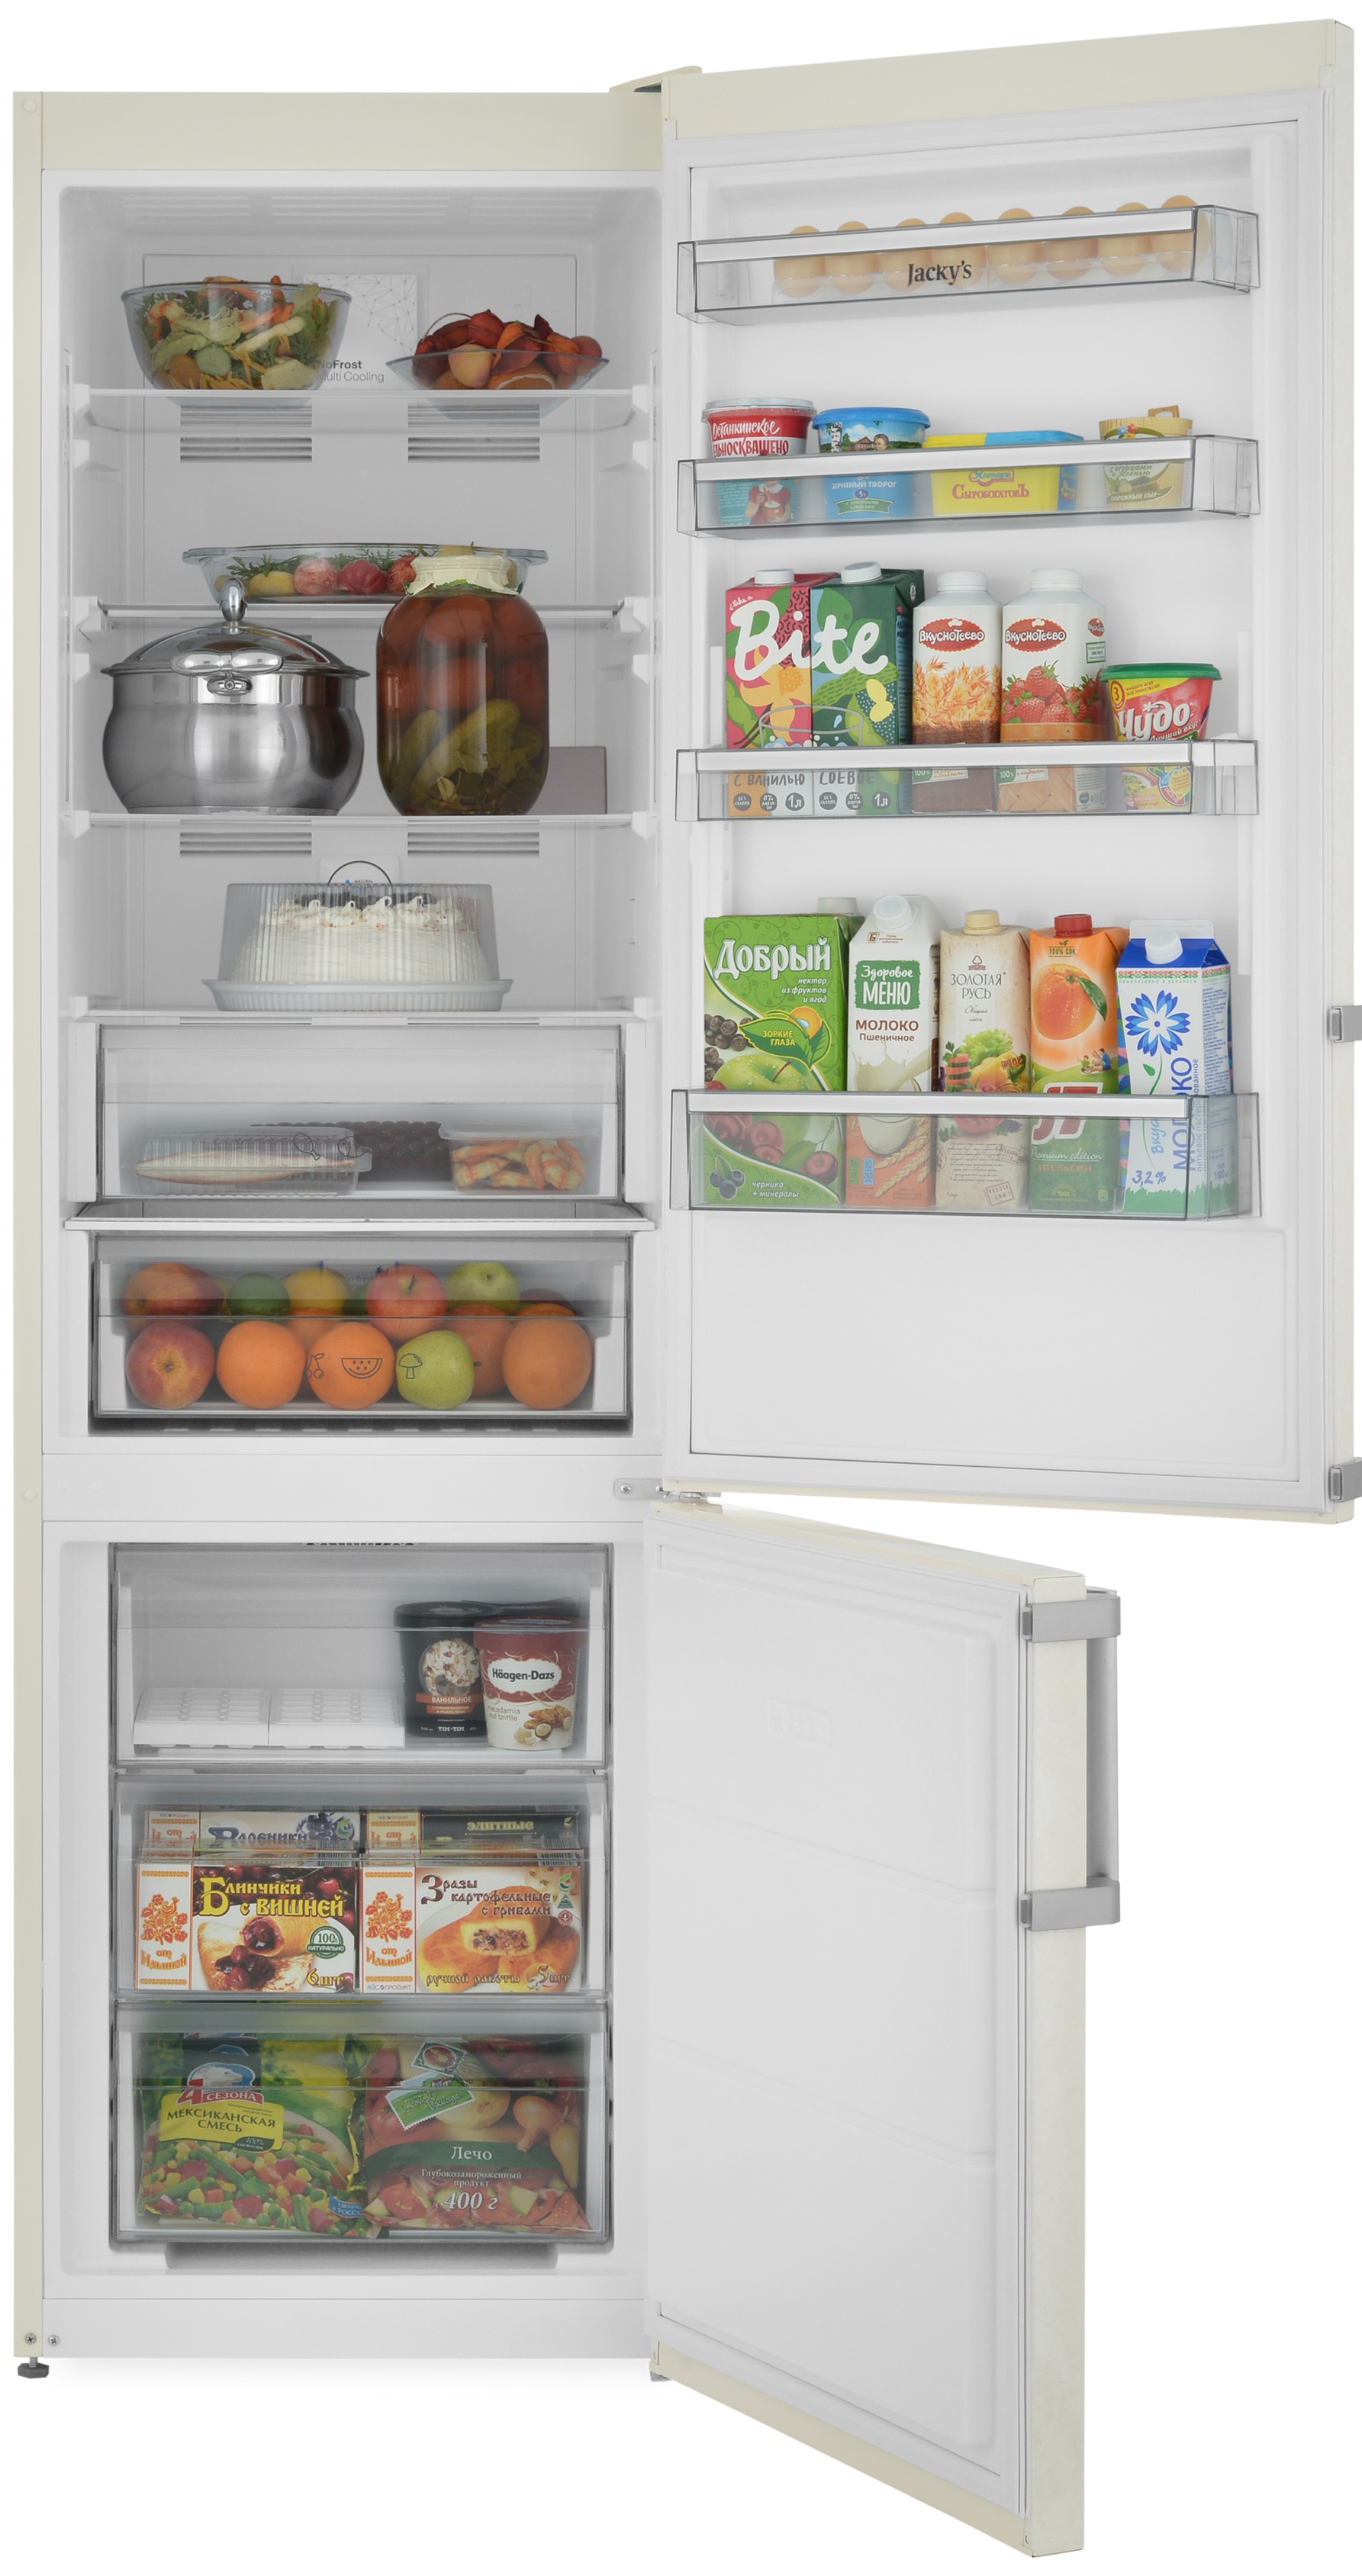 Jacky s отзывы. Холодильник Jacky`s Jr fv2000. Холодильник Jackys Jr fw2000. Двухкамерный холодильник Jacky`s Jr FV 2000 мраморный бежевый. Jacky's Jr fv227ms.